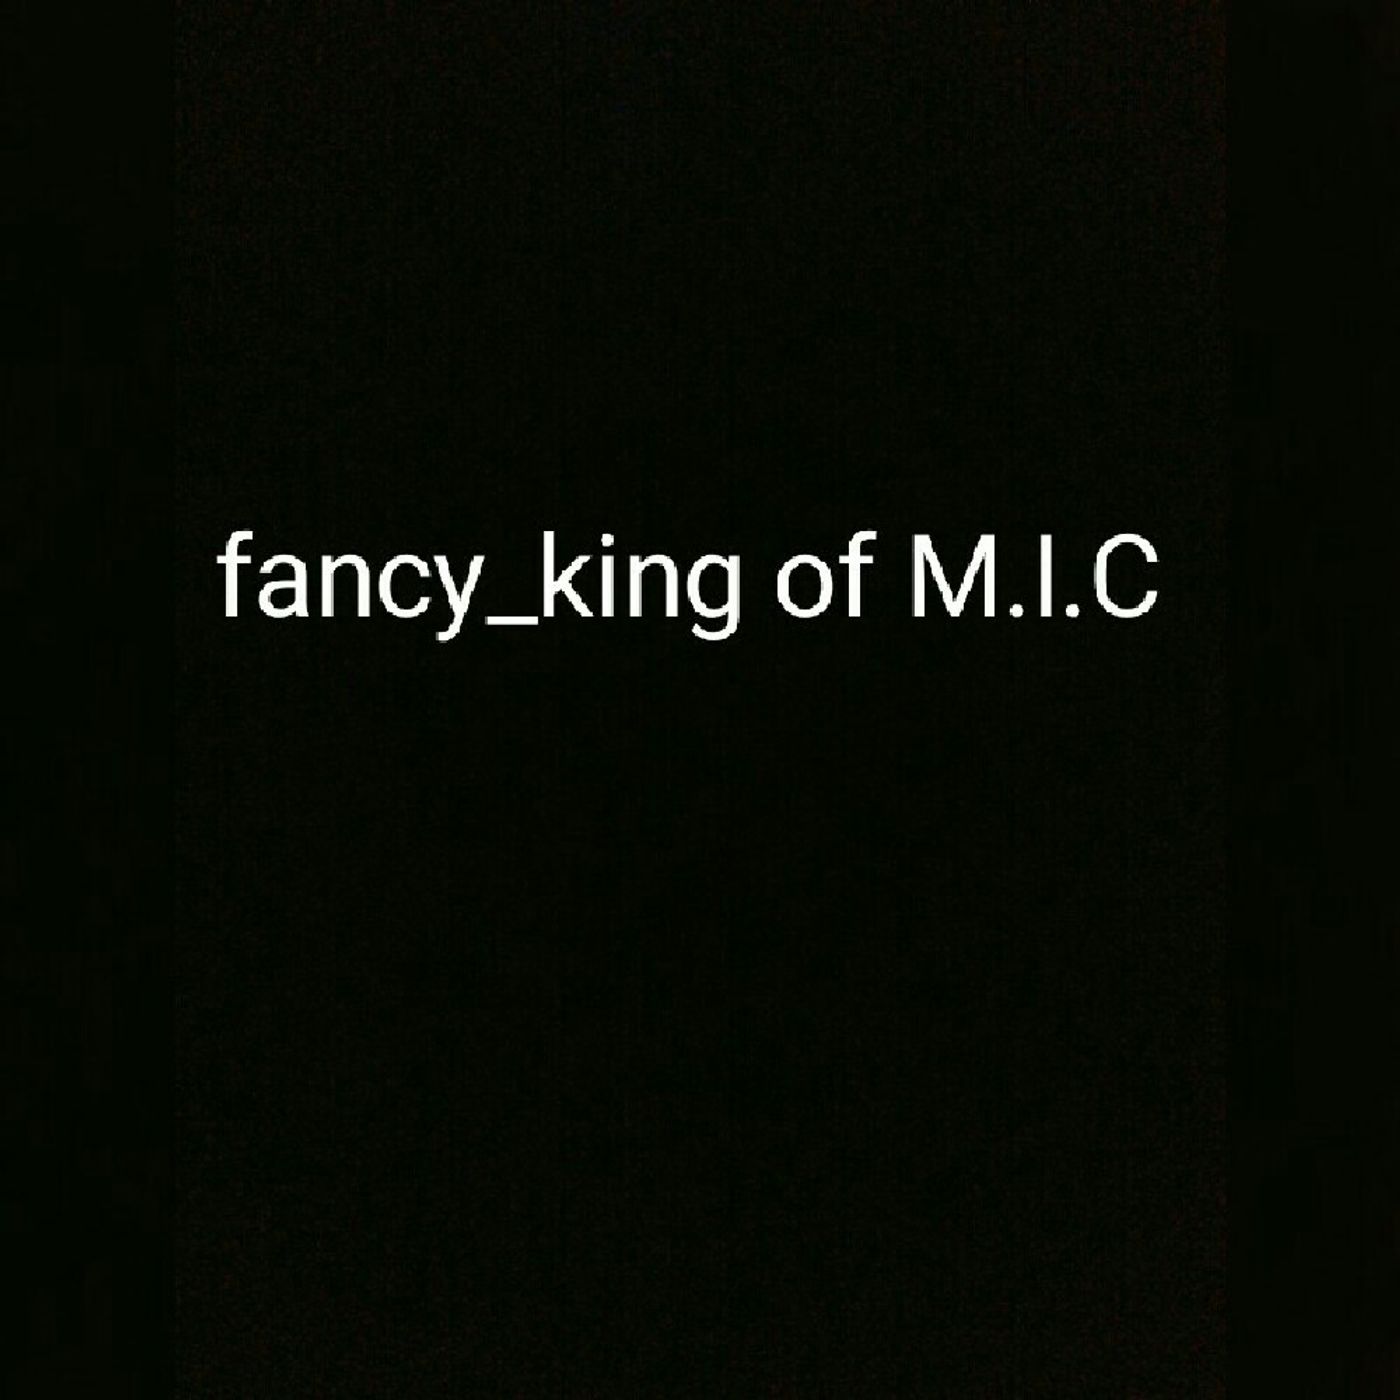 Fancy_king Of M.I.C